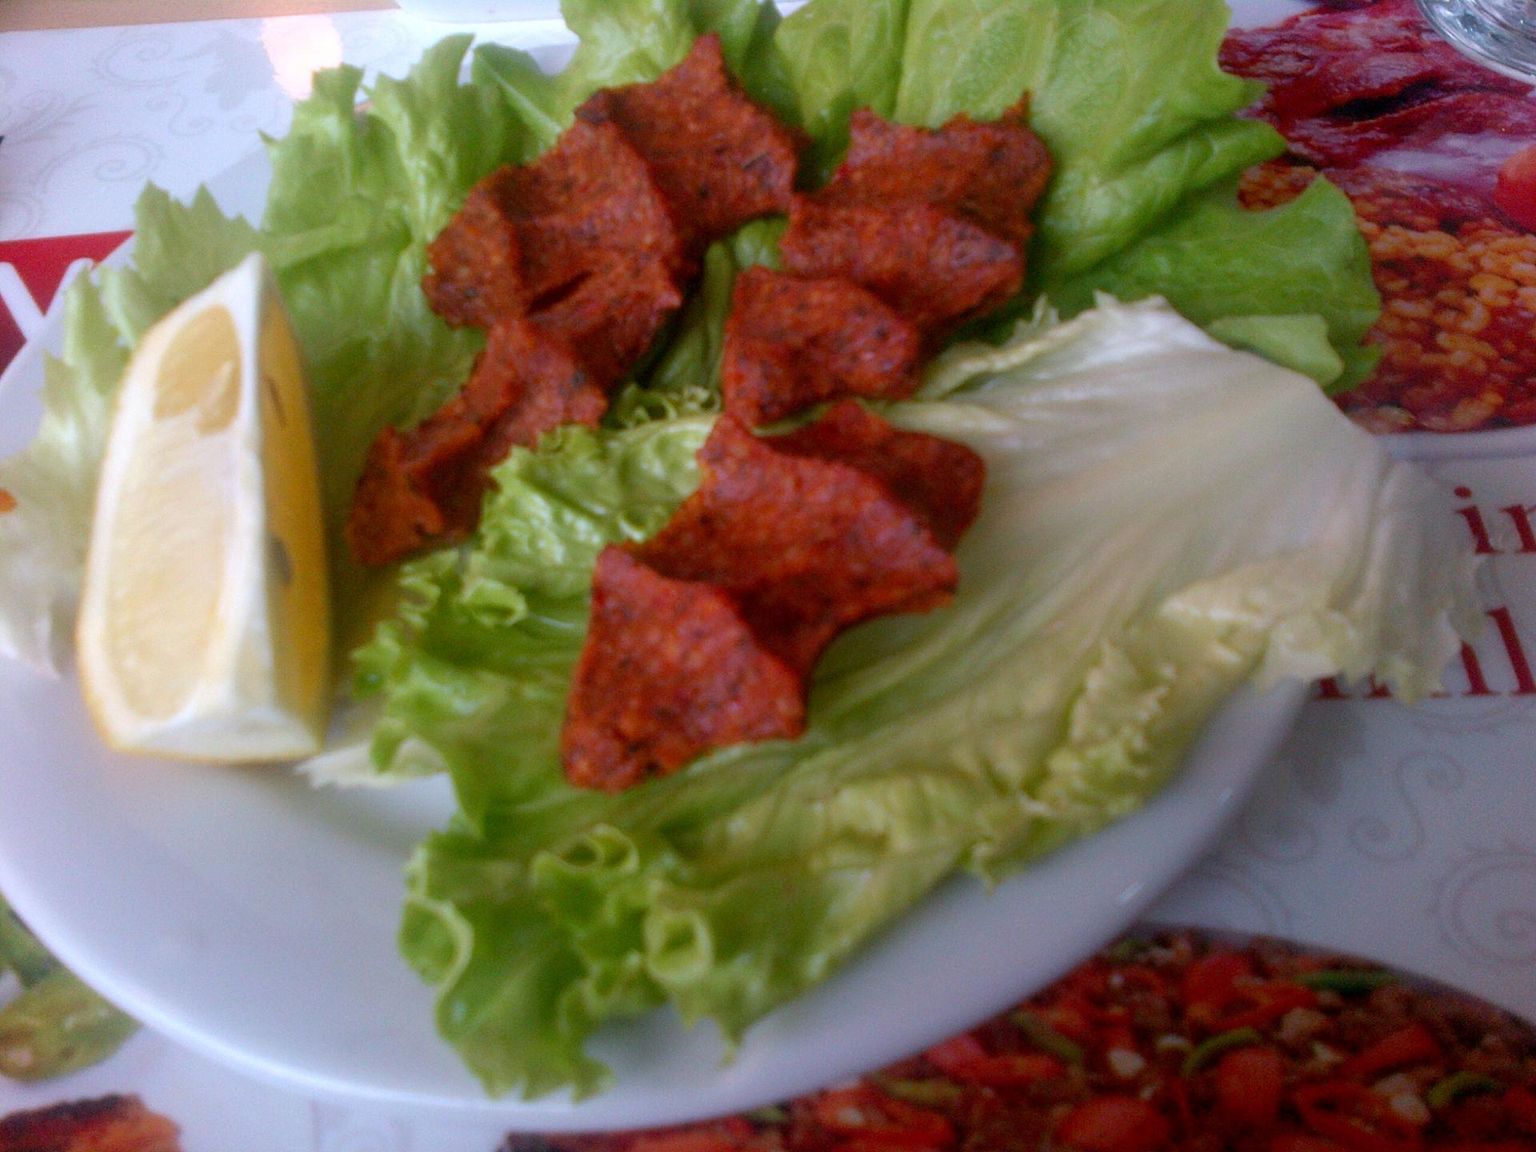 Lihapalle armastatakse Türgis vahel süüa ka Karlssonile ennekuulmatul kujul ehk toorelt. See roog kannab nime çiğ köfte. 